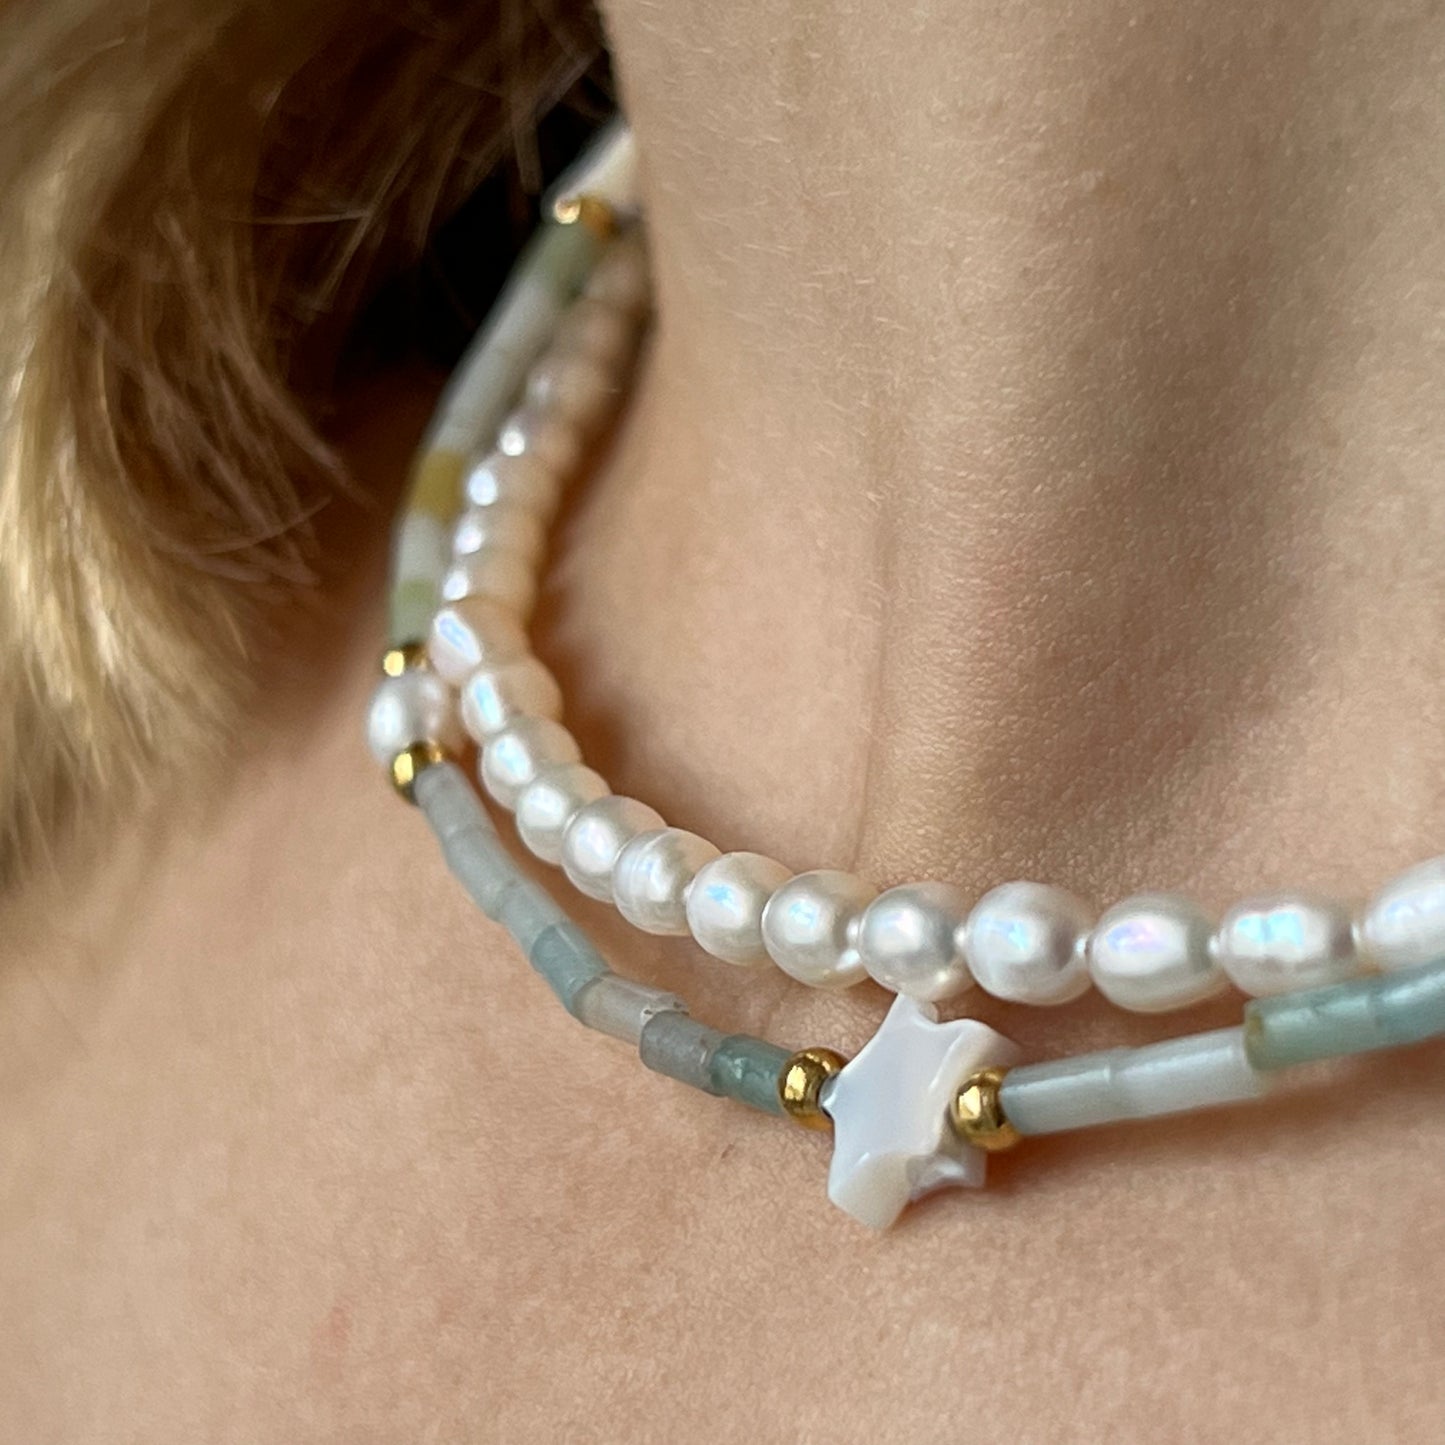 Perlový náhrdelník,  Pravy perlový náhrdelník,  Perlový náhrdelník bižuterie,  Perlový náhrdelník z mořských perel, Perlový náhrdelník choker, perlové šperky,  Sladkovodní perly,  Mořské perly,  Pravé říční perly, Říční perly, Zlaté šperky s perlou,  Sladkovodní perly